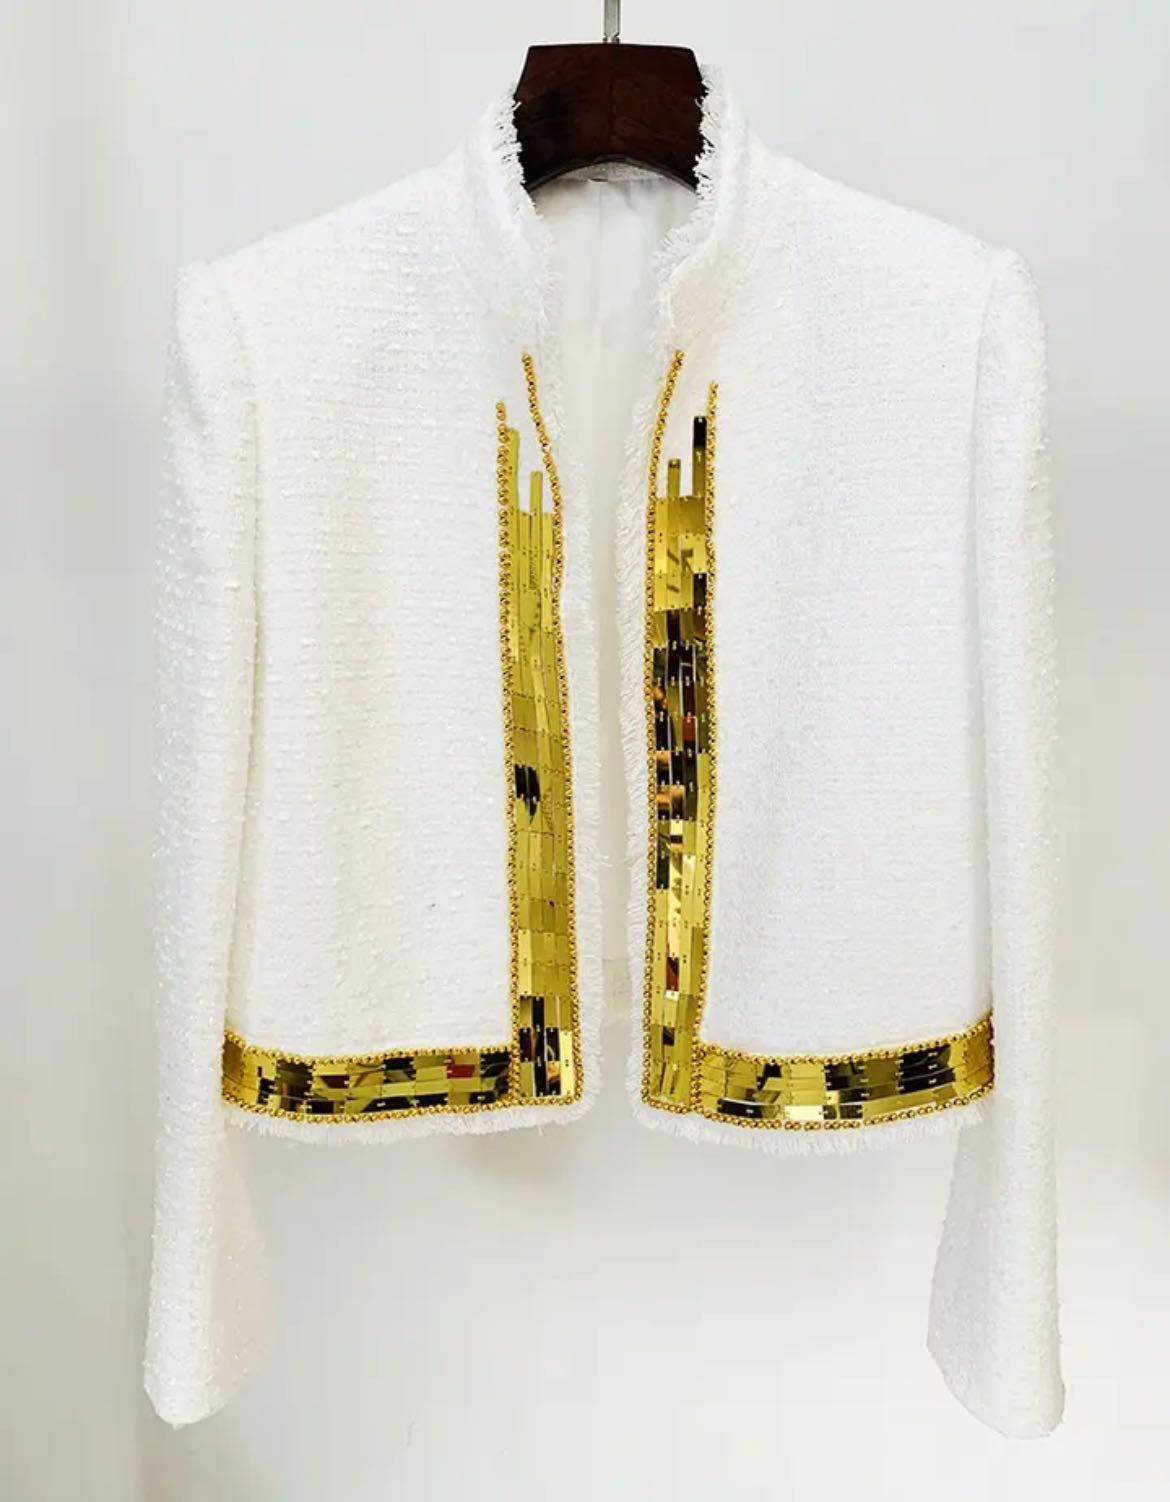 Късо бяло сако с декорации от букле